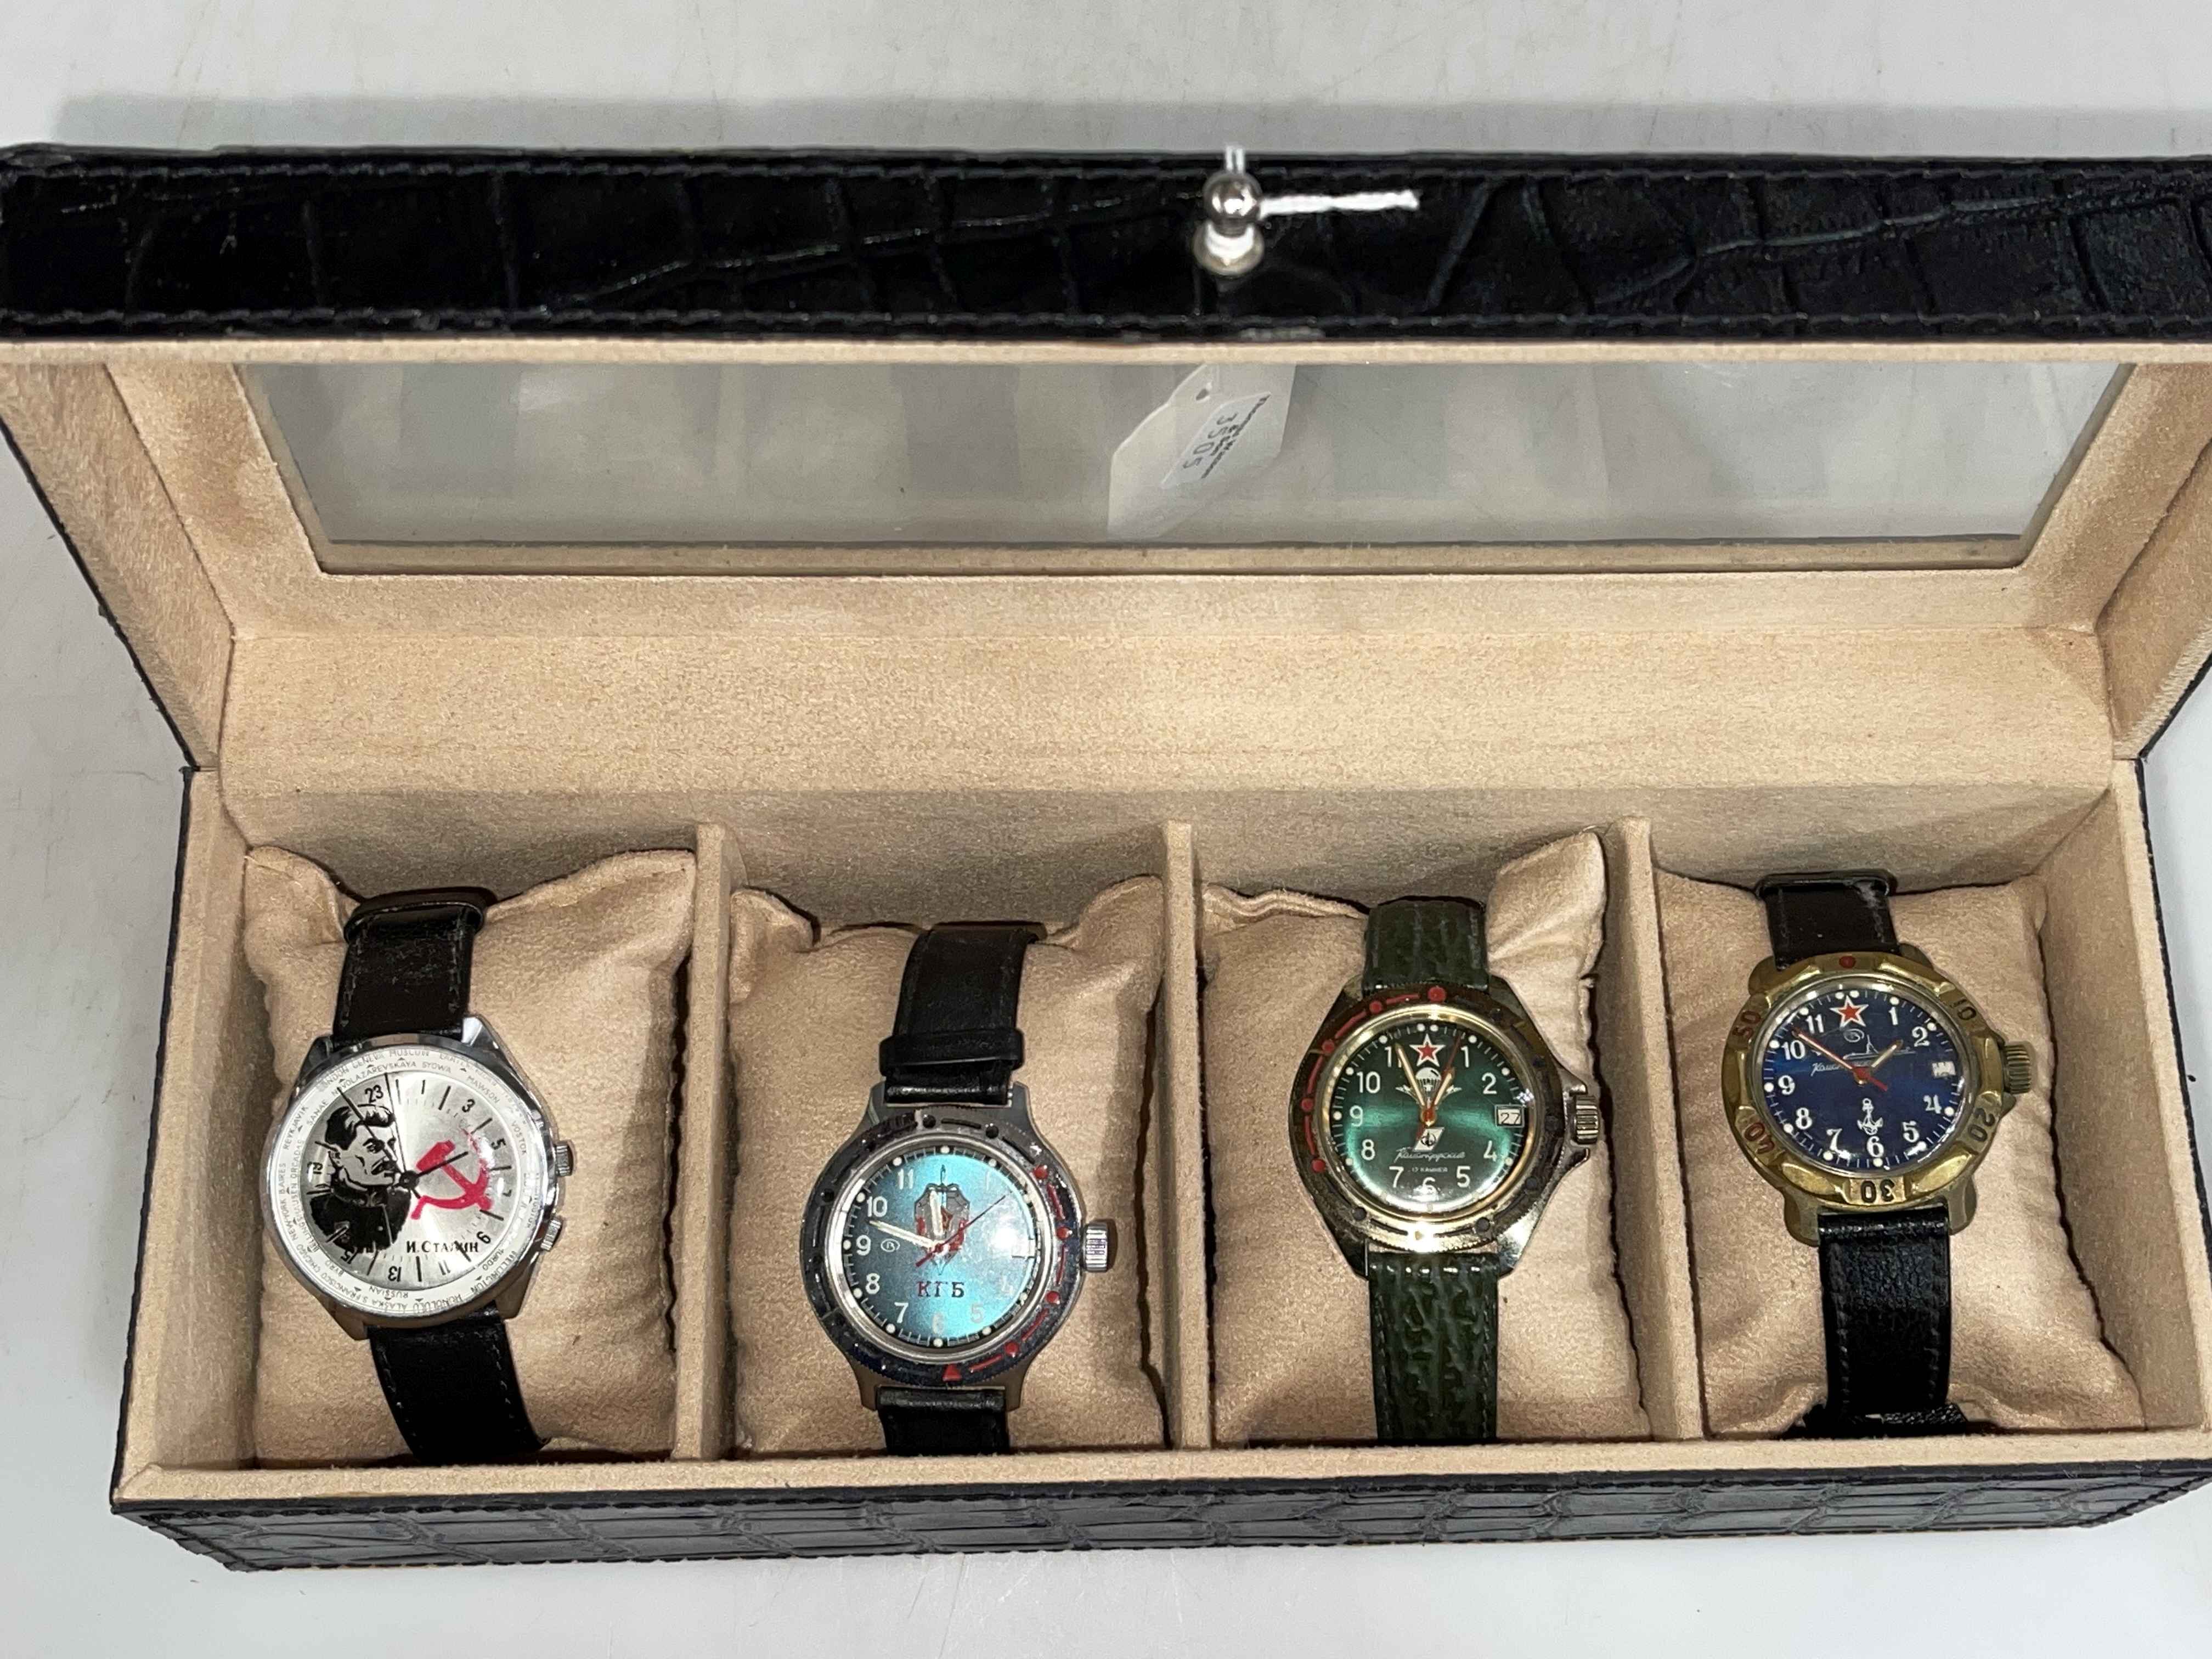 Four Soviet era wristwatches, in display case.